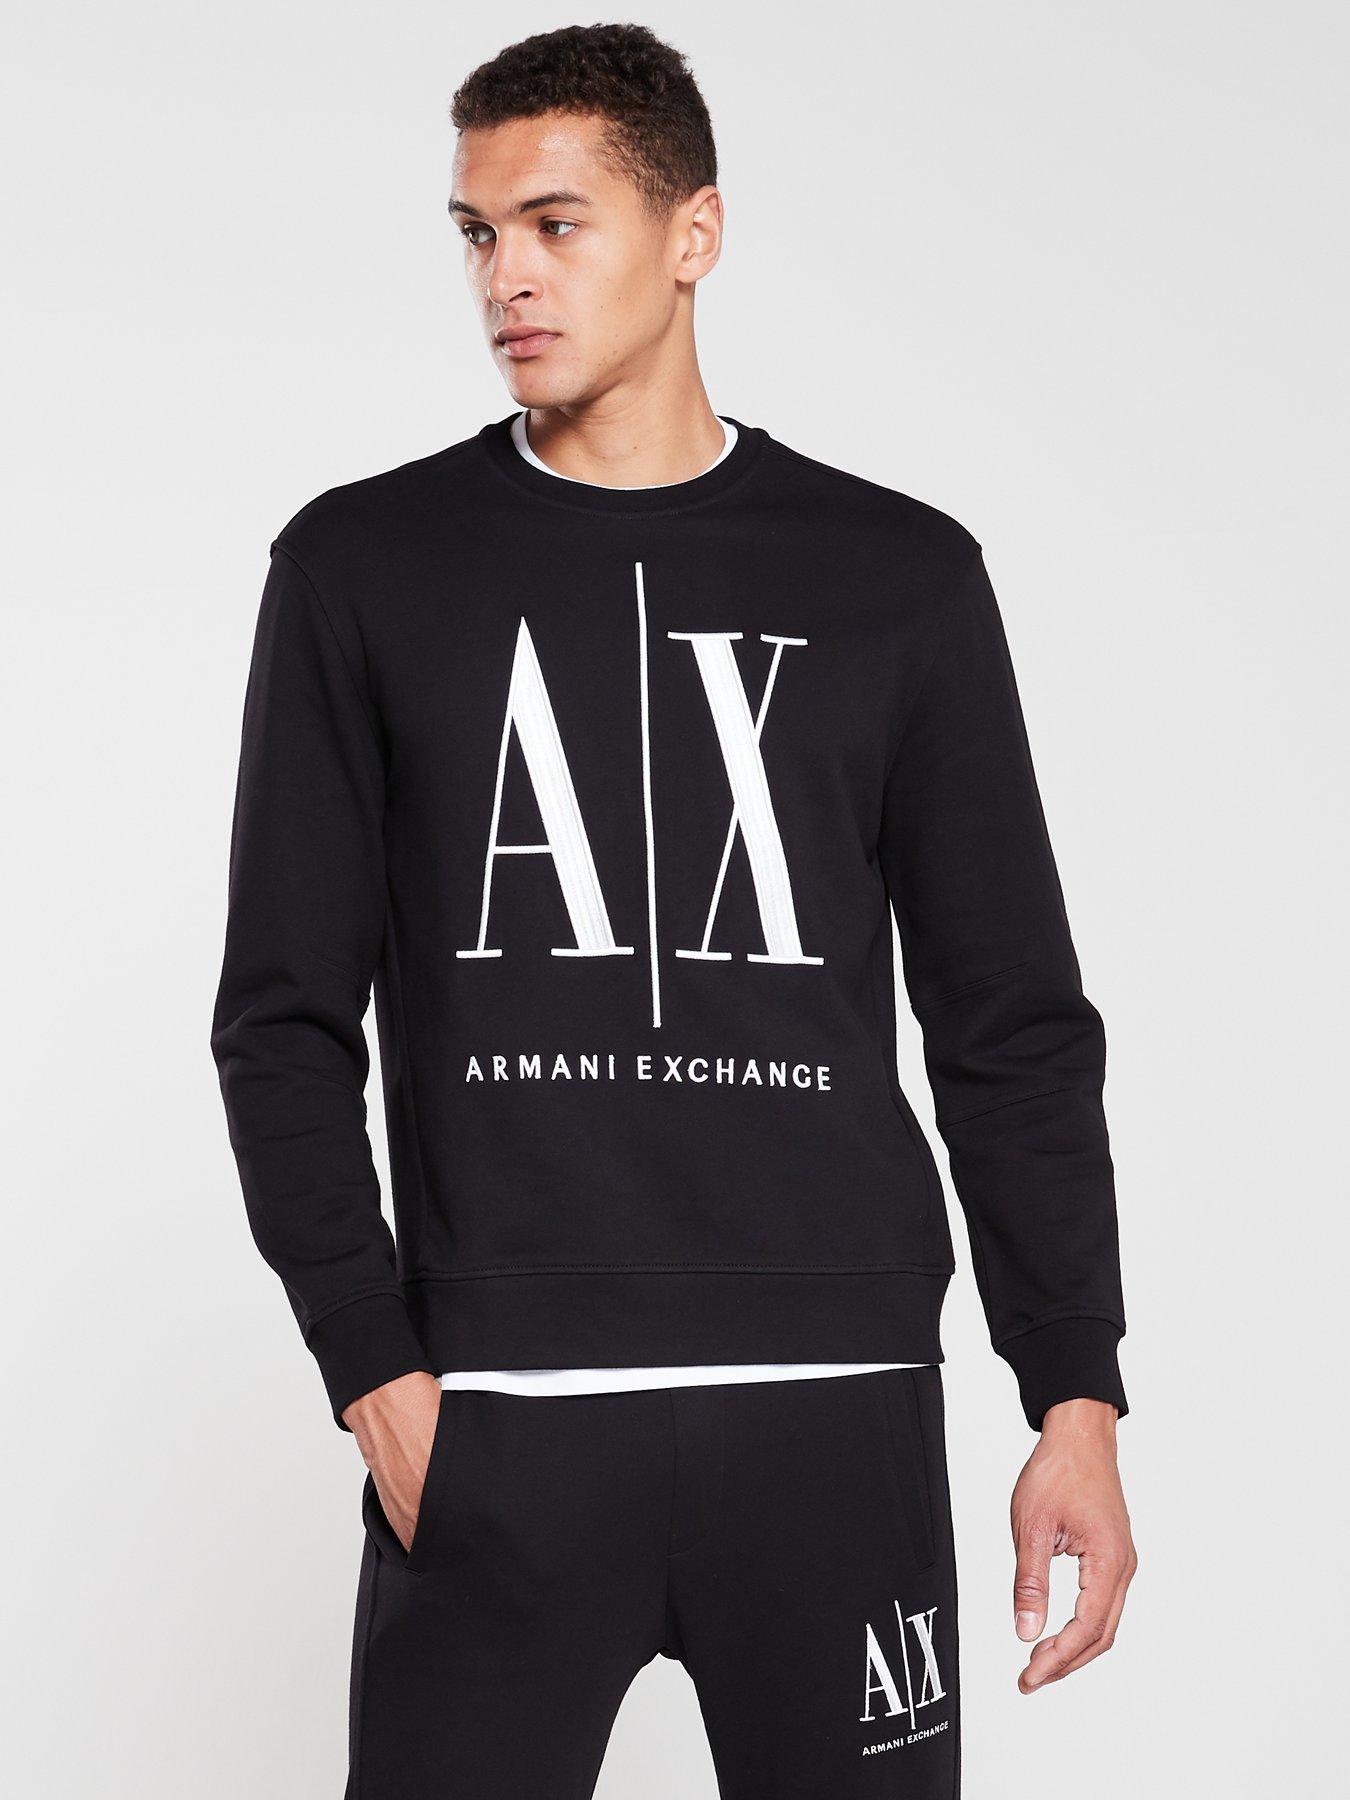 Armani Exchange Large Embroidered Logo Sweatshirt - Black 